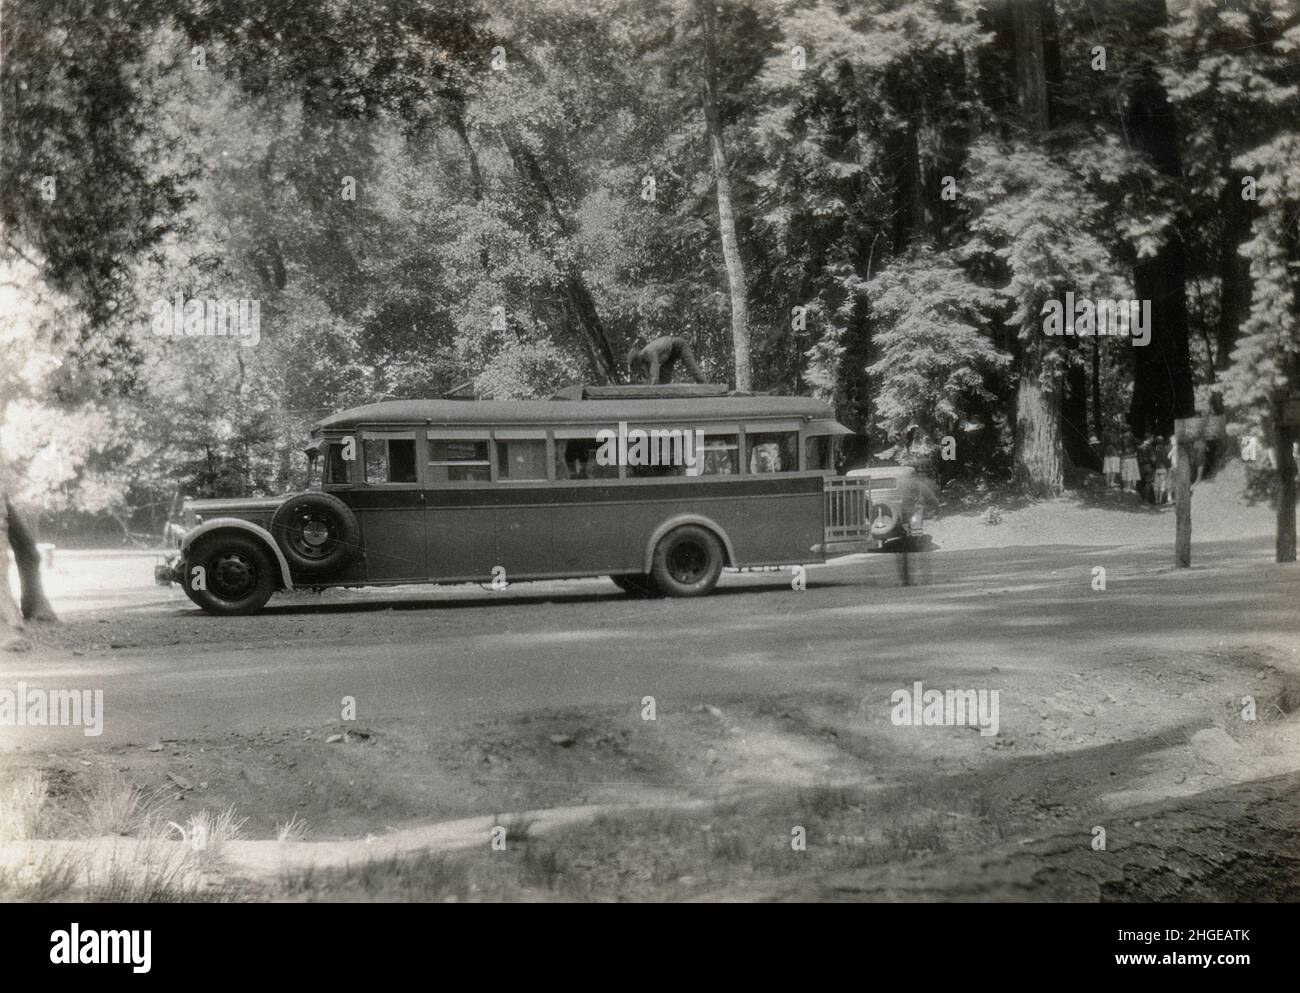 Foto antica del 1931, pullman privato al Sequoia National Park, California, Stati Uniti. FONTE: FOTOGRAFIA ORIGINALE. Vedere Alamy 2HGEAWG e 2HGEAW9 per ulteriori viste di questo autobus. Foto Stock